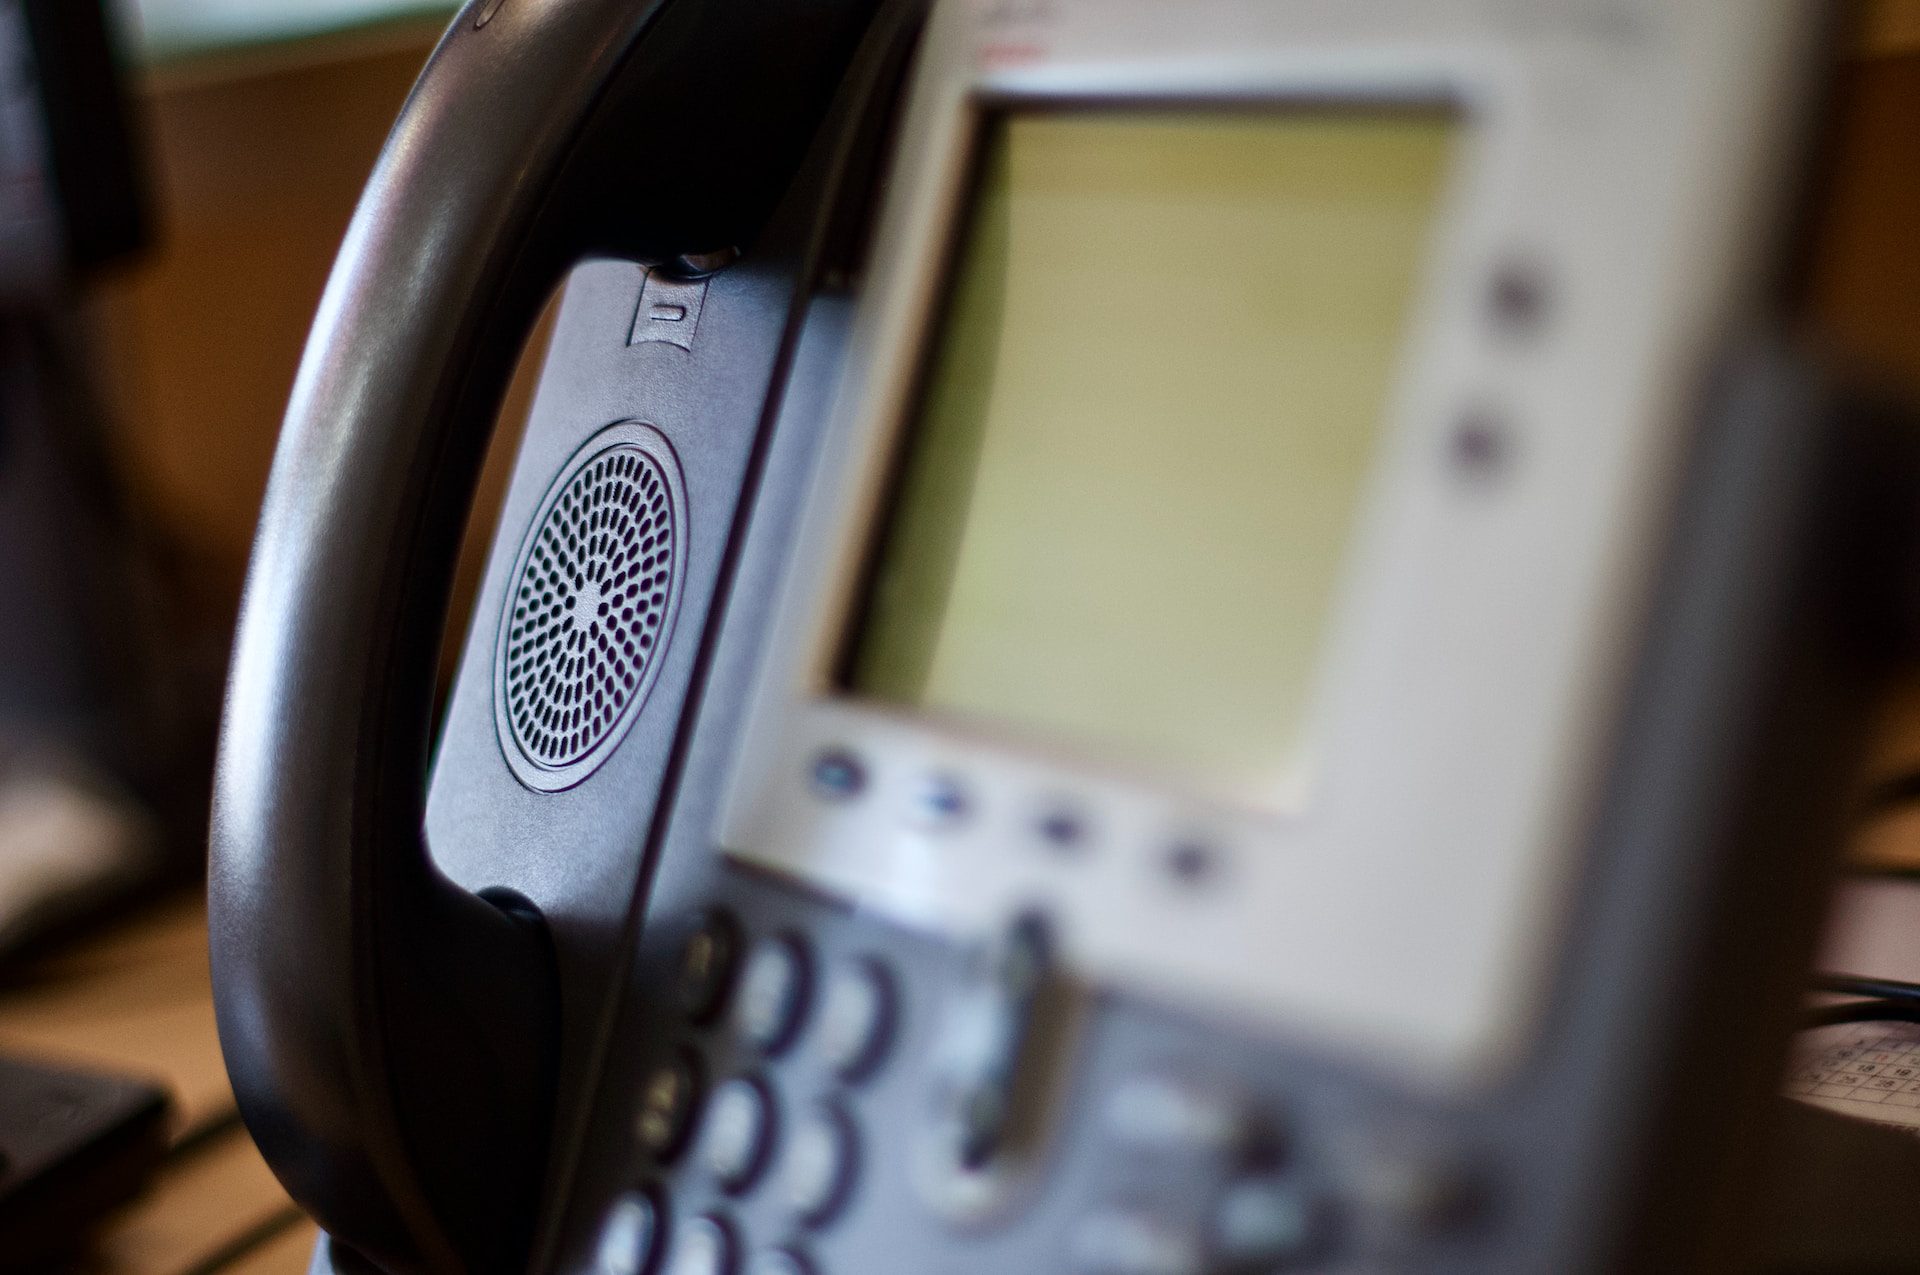 A close-up of a landline handset system.